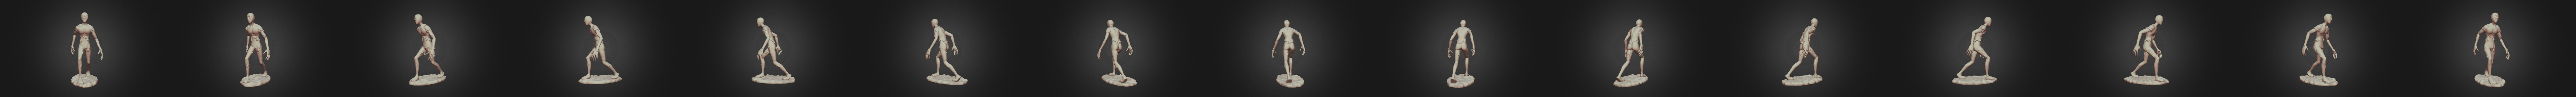 roblox seek - 3D model by jacky0723lincy0723 (@jacky0723lincy0723) [0f54d4c]